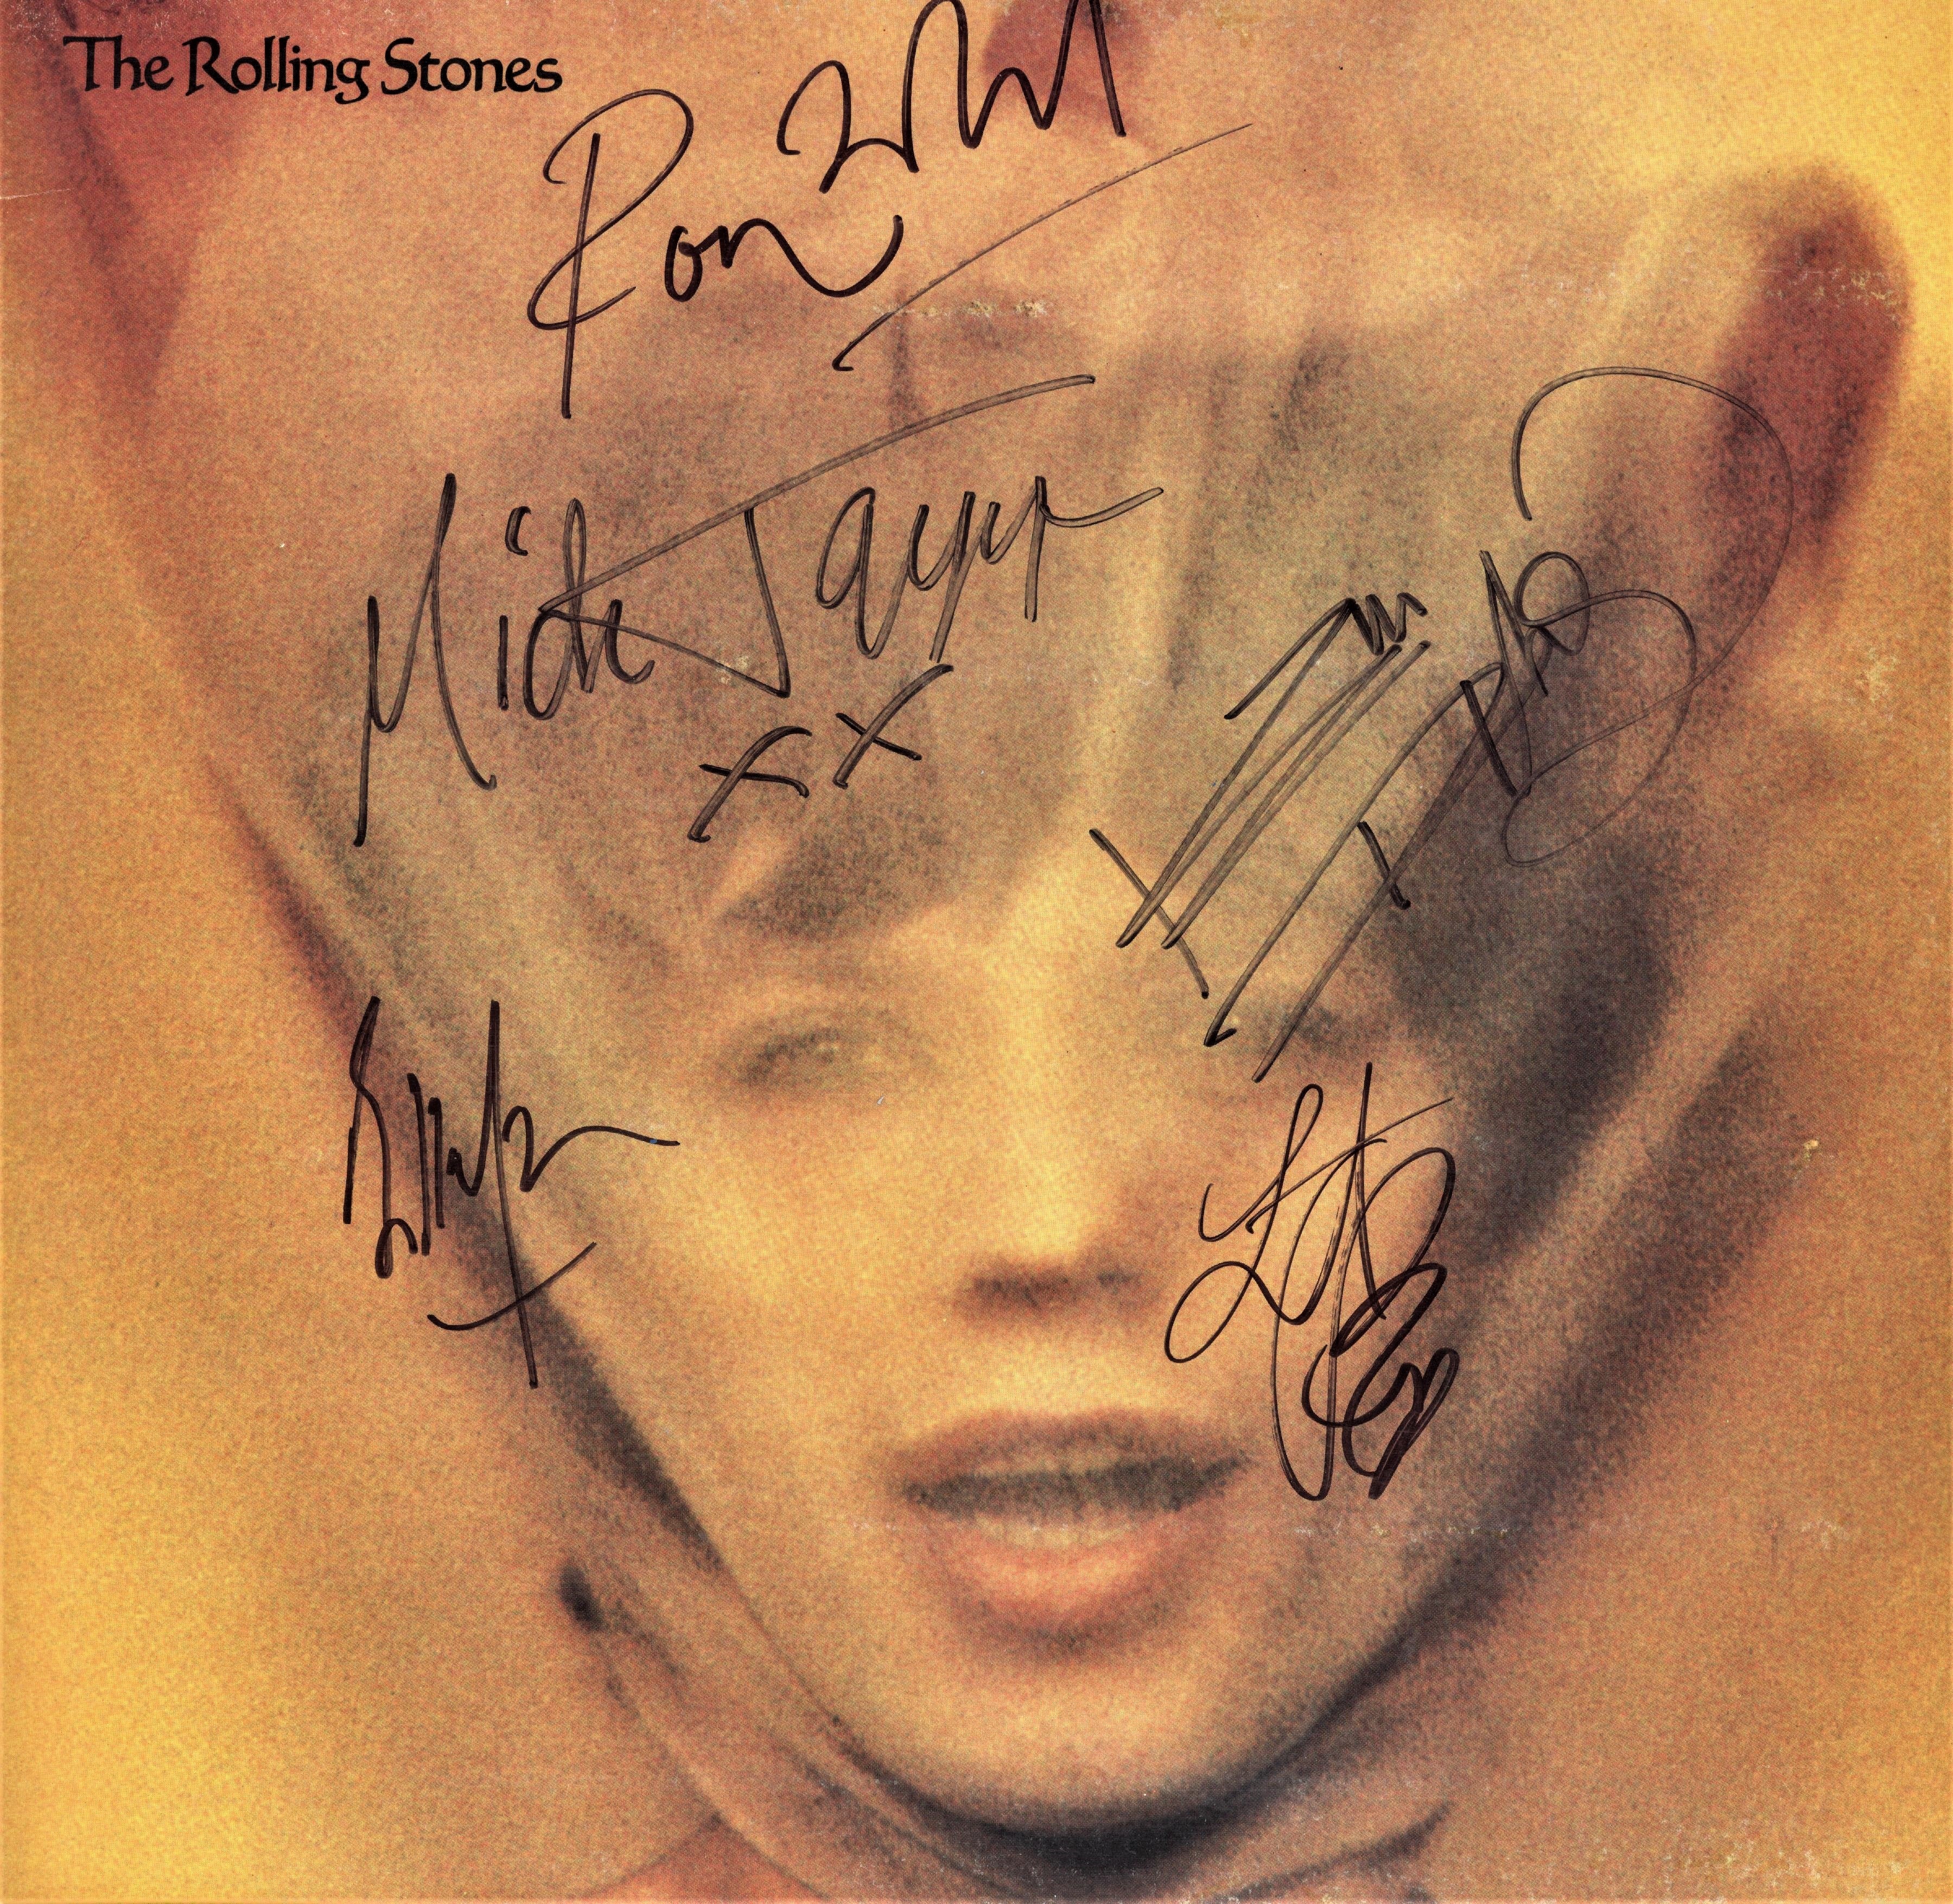 Album L'âge d'or des Rolling Stones vol 9 en disque vinyle 33